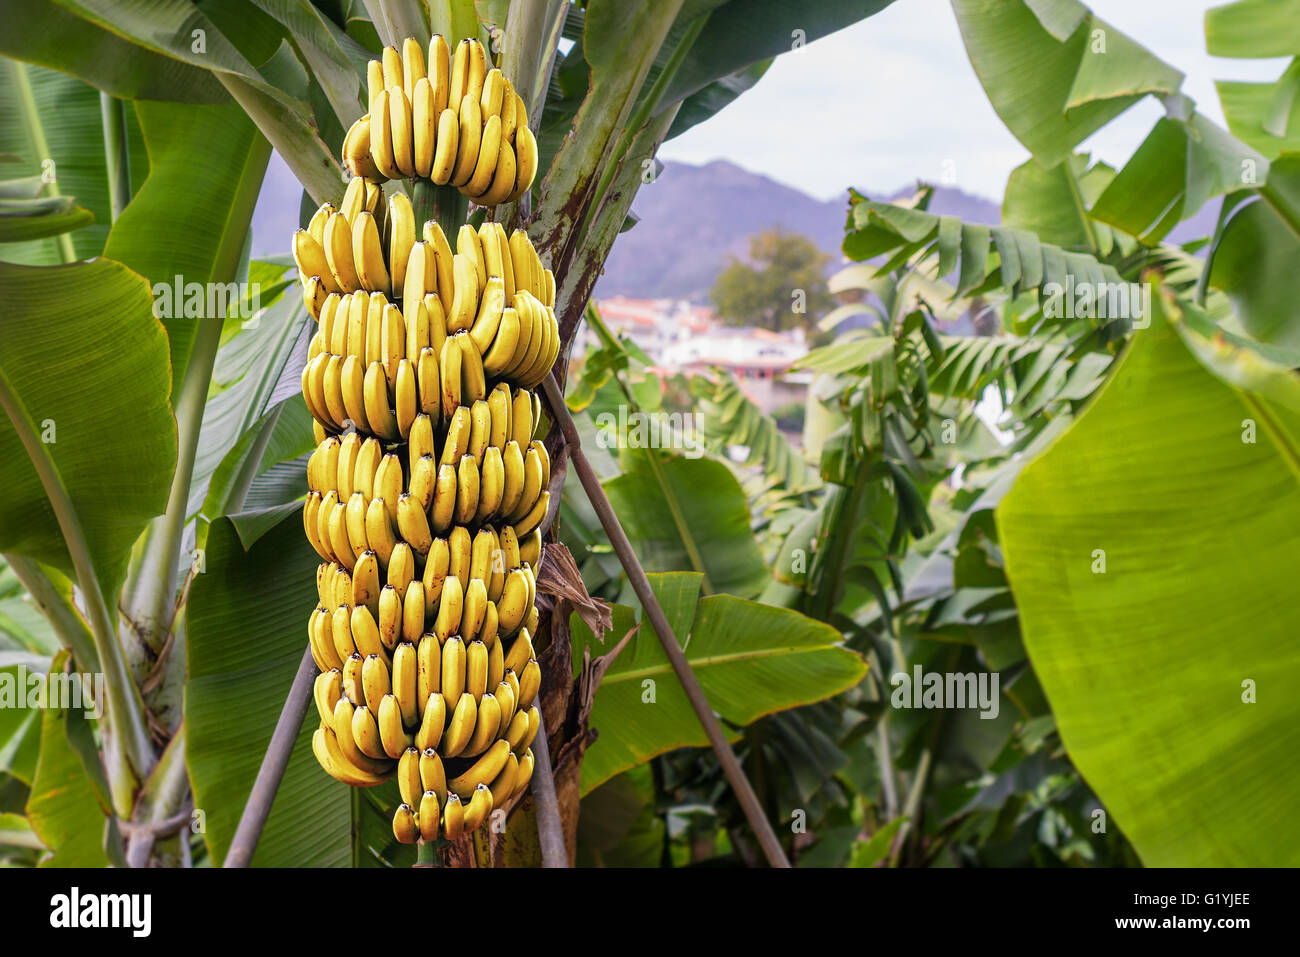 Bananenbaum mit einem Bündel von wachsenden Reife gelbe Bananen Plantage in Funchal, Madeira Insel, Portugal Stockfoto